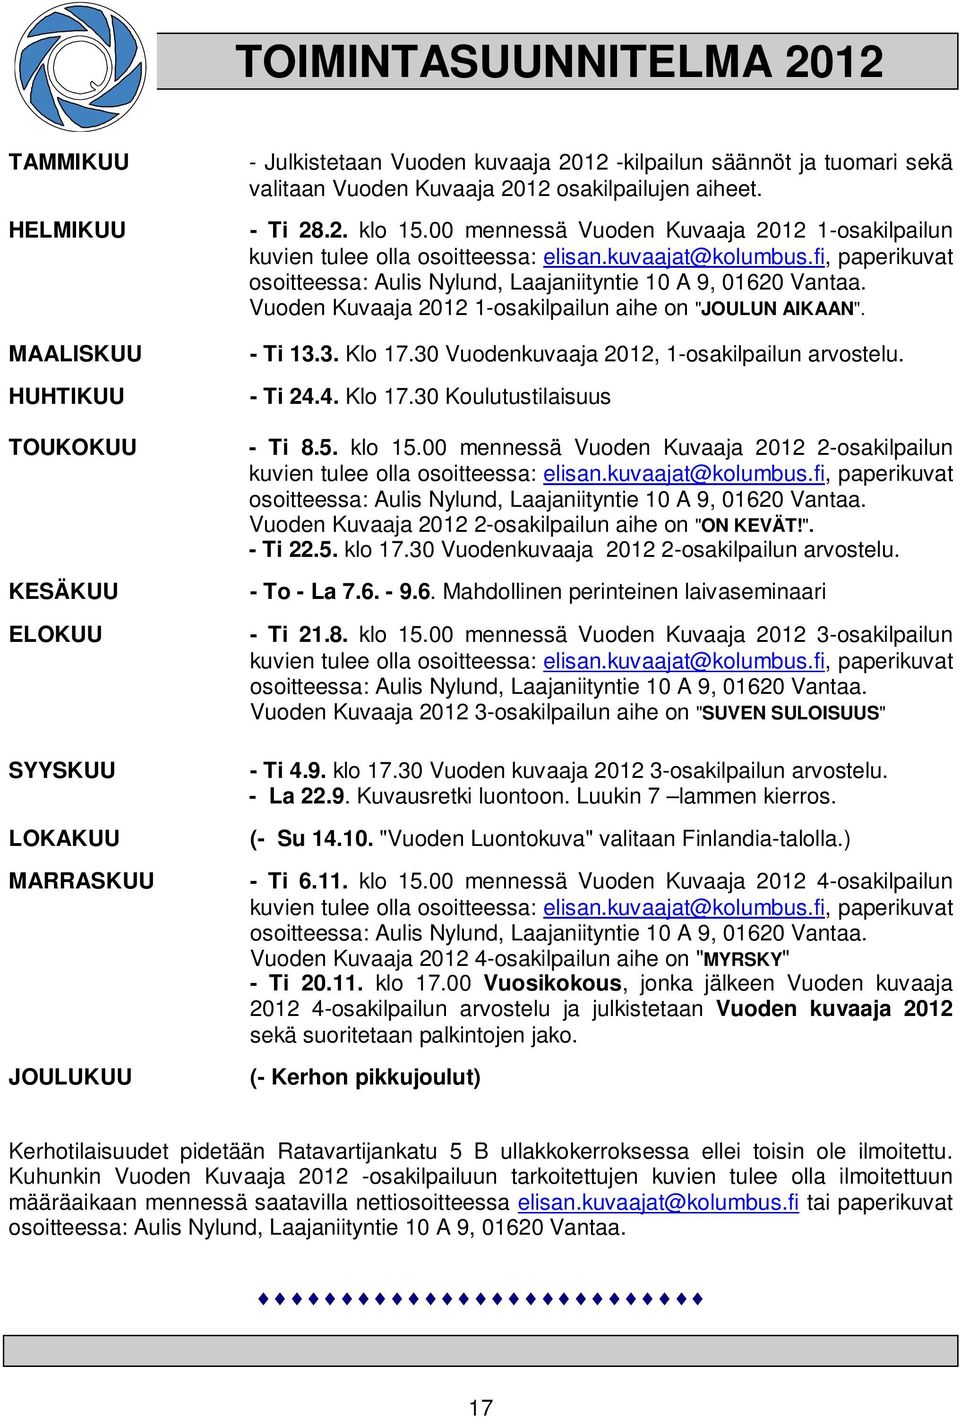 fi, paperikuvat osoitteessa: Aulis Nylund, Laajaniityntie 10 A 9, 01620 Vantaa. Vuoden Kuvaaja 2012 1-osakilpailun aihe on "JOULUN AIKAAN". - Ti 13.3. Klo 17.